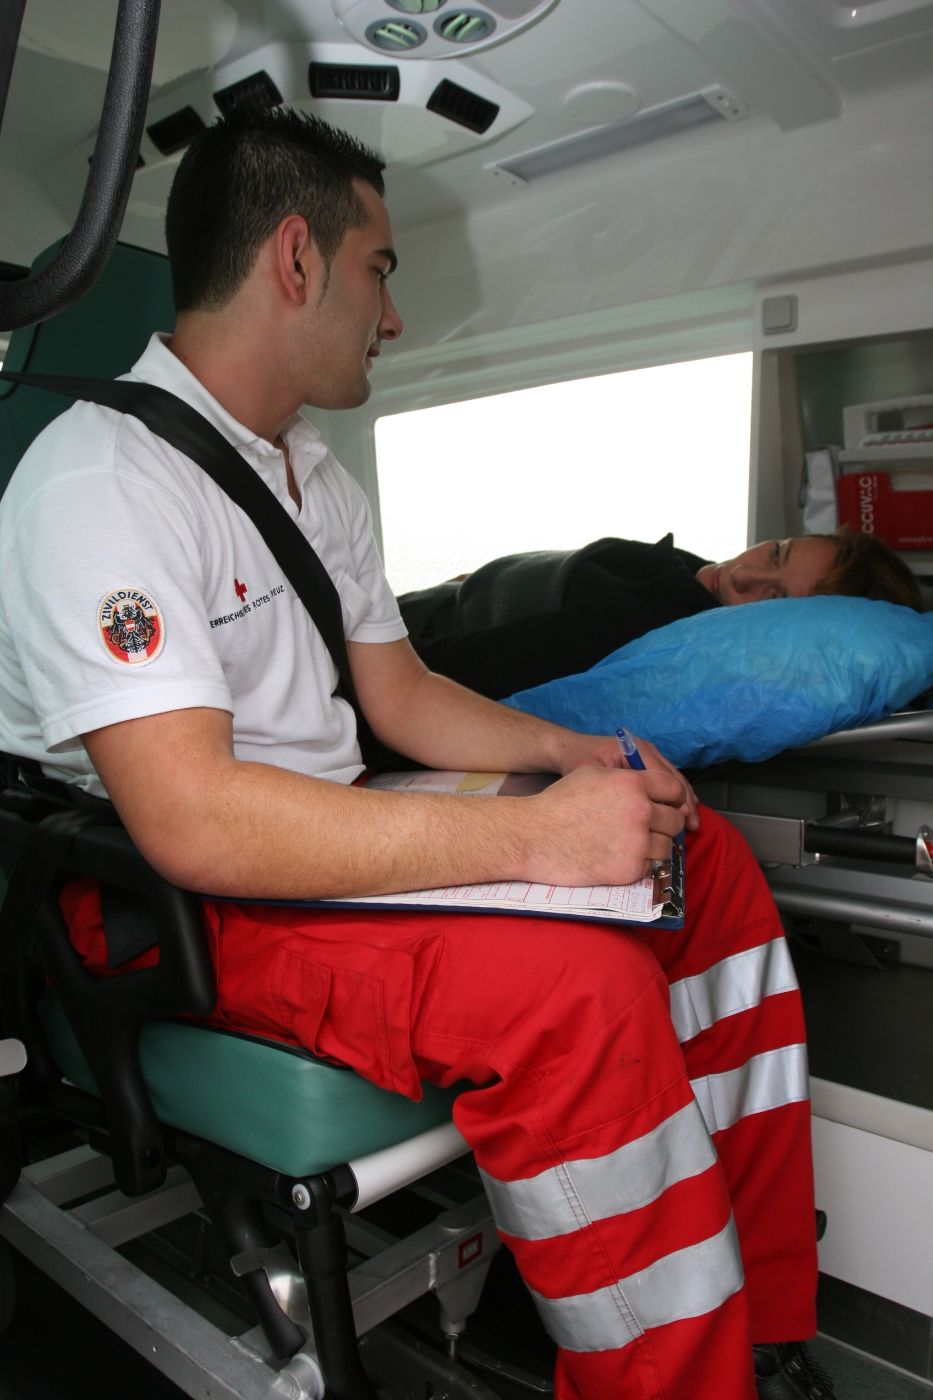 Ein Zivildiener sitzt in einem Rettungswagen, eine Patientin liegt neben dem Zivildiener im Rettungswagen.